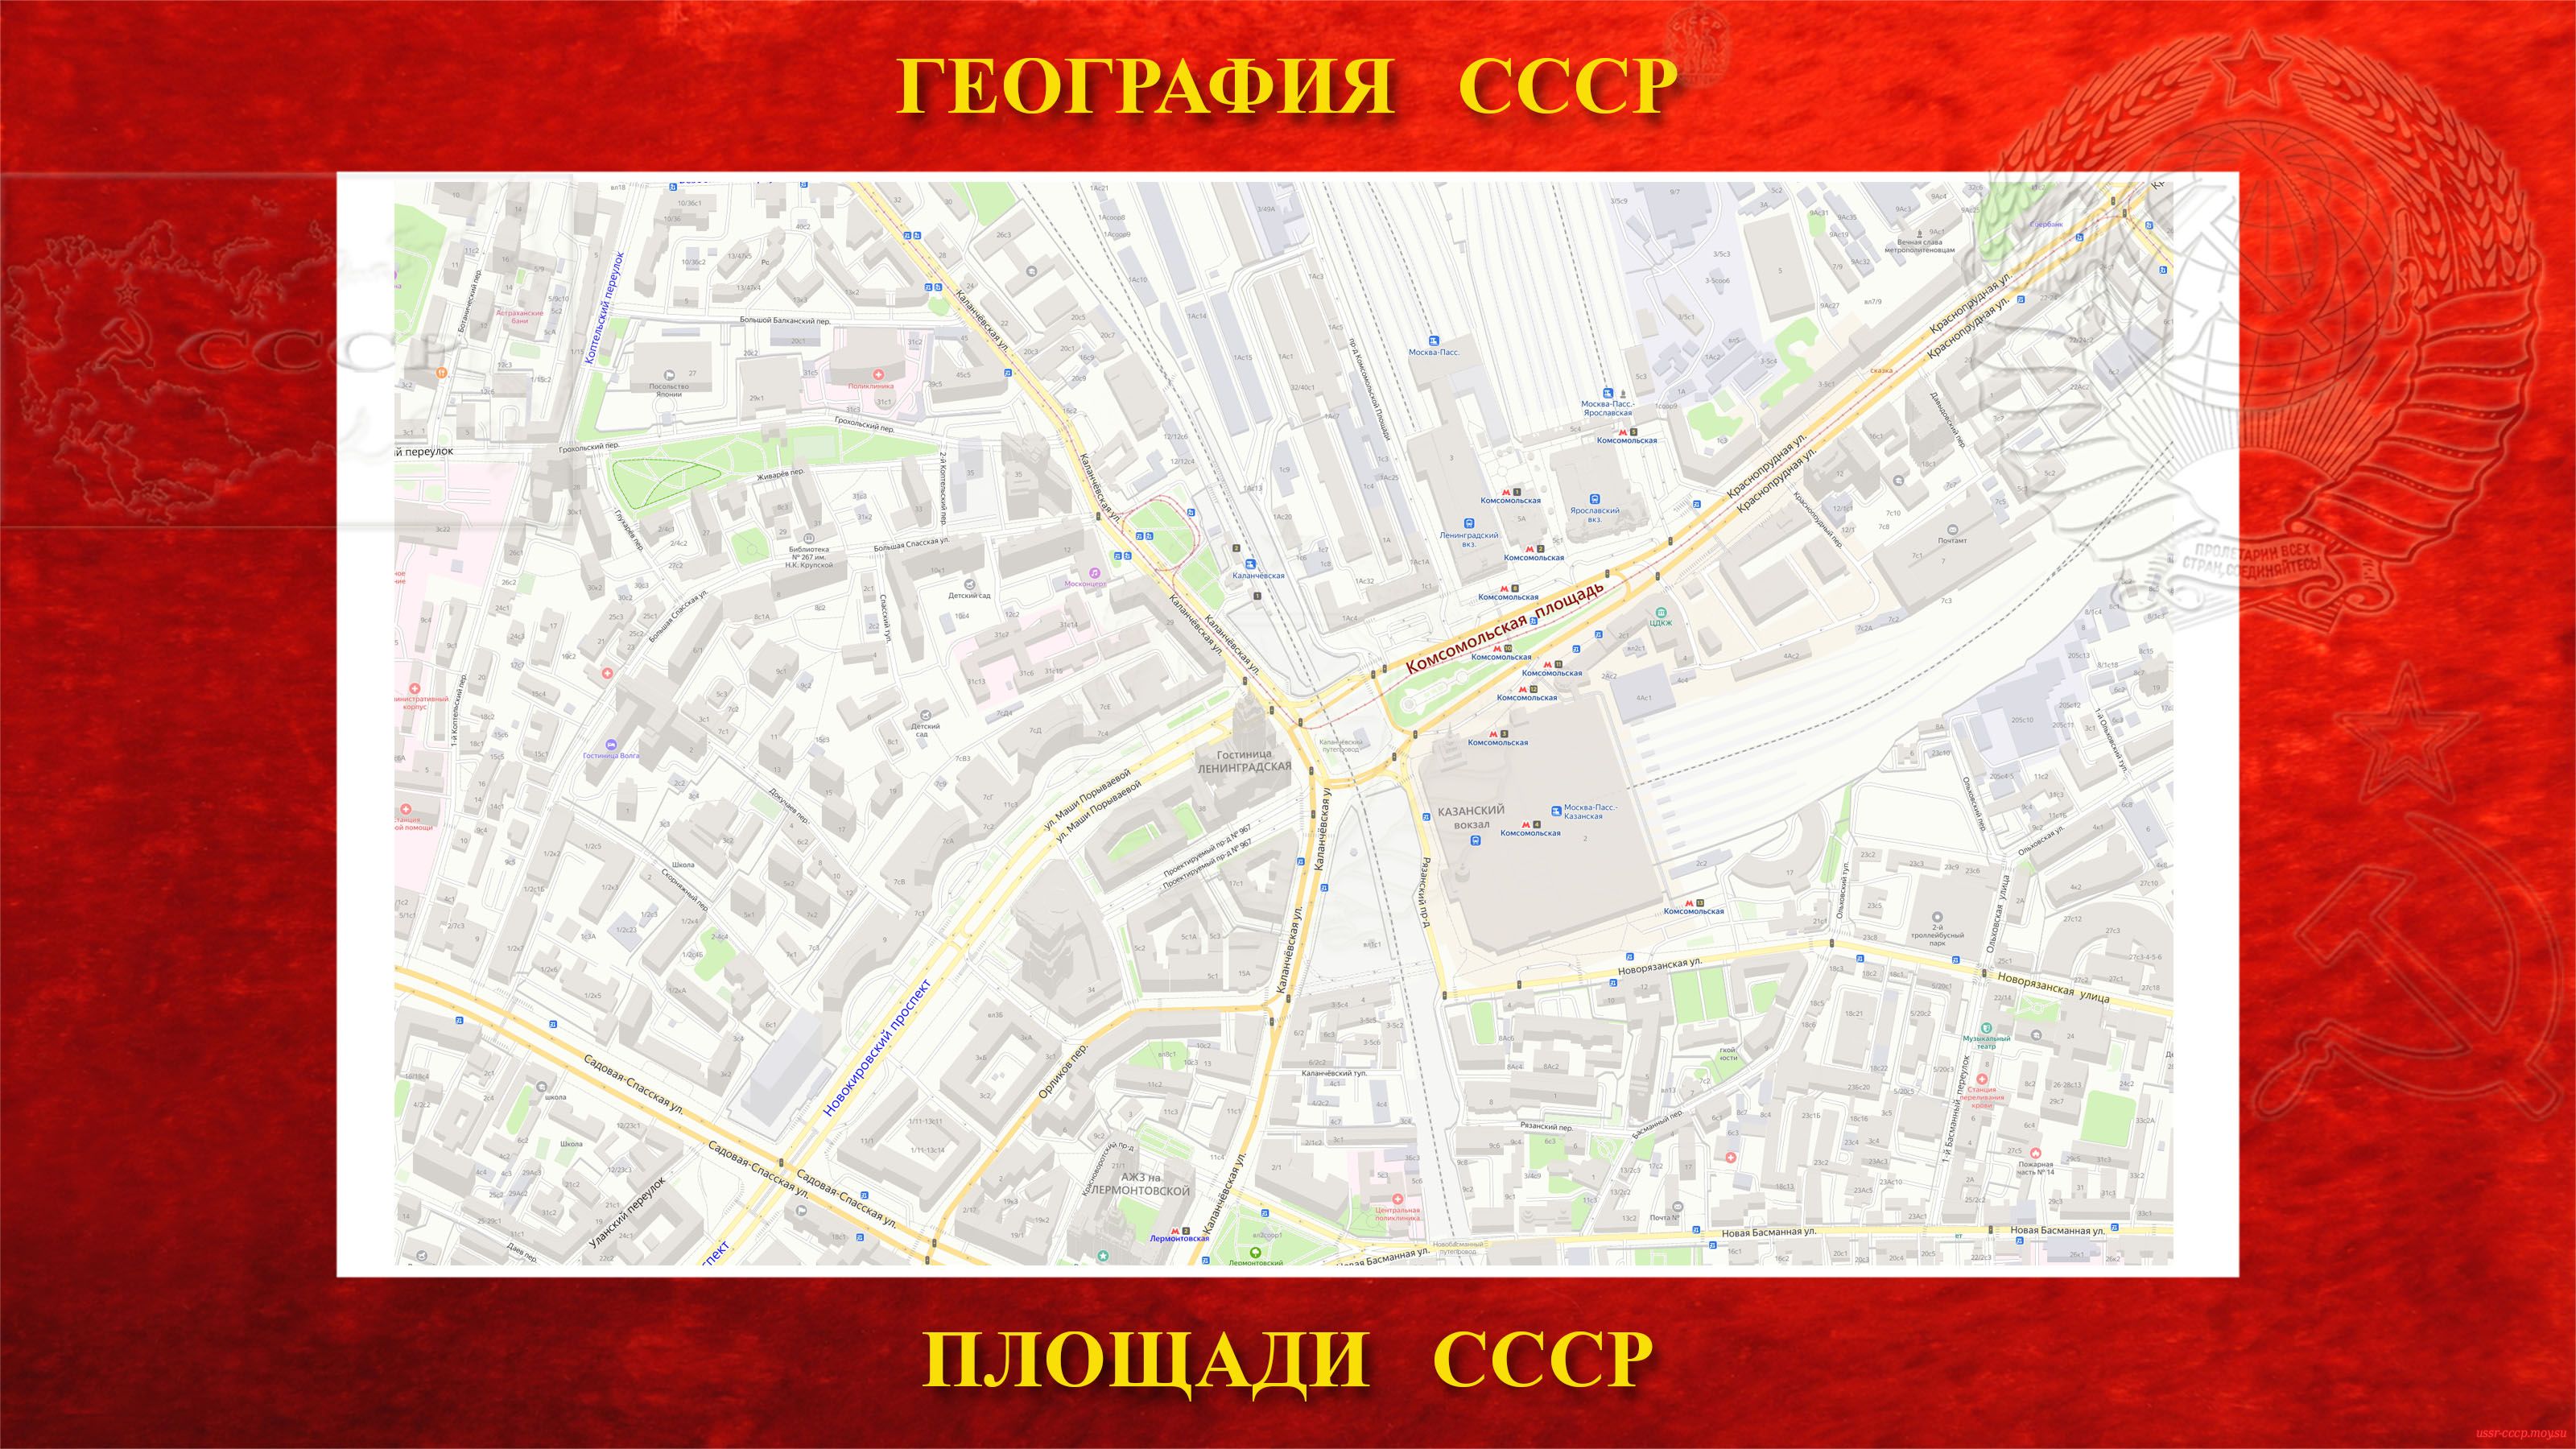 Комсомольская — Площадь в центре Москвы